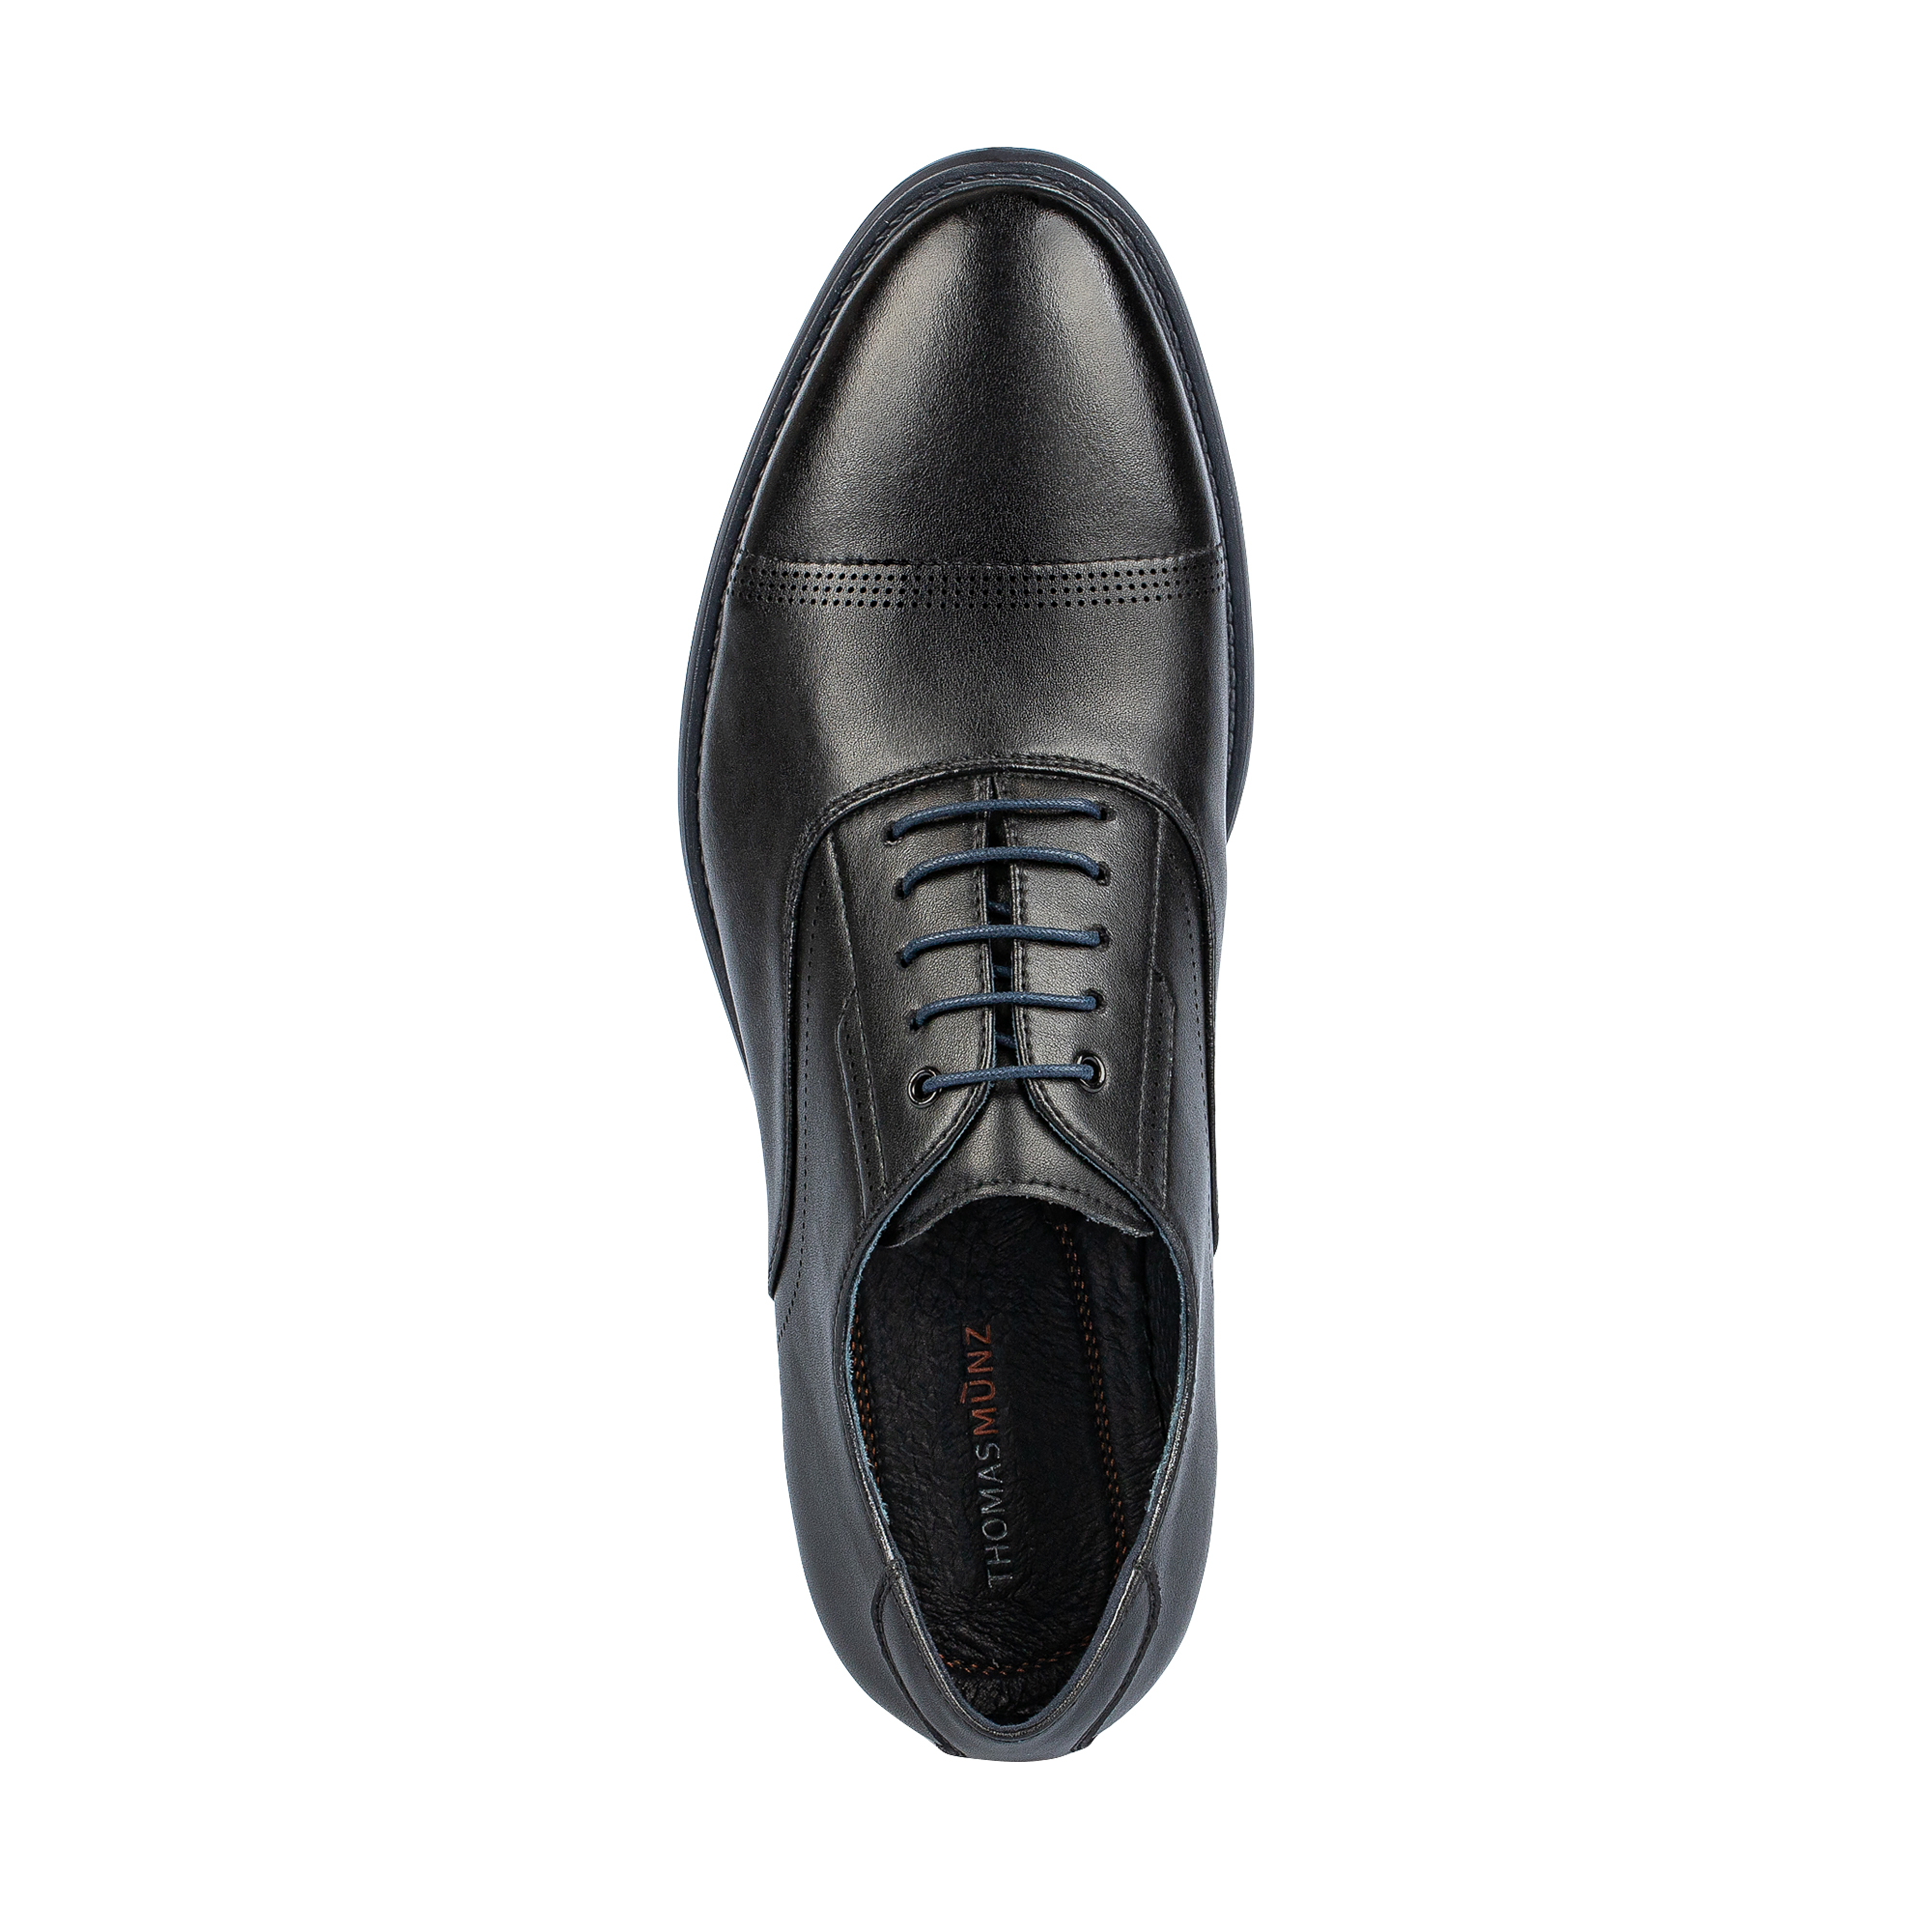 Туфли/полуботинки Thomas Munz 104-642A-1602, цвет черный, размер 45 - фото 5